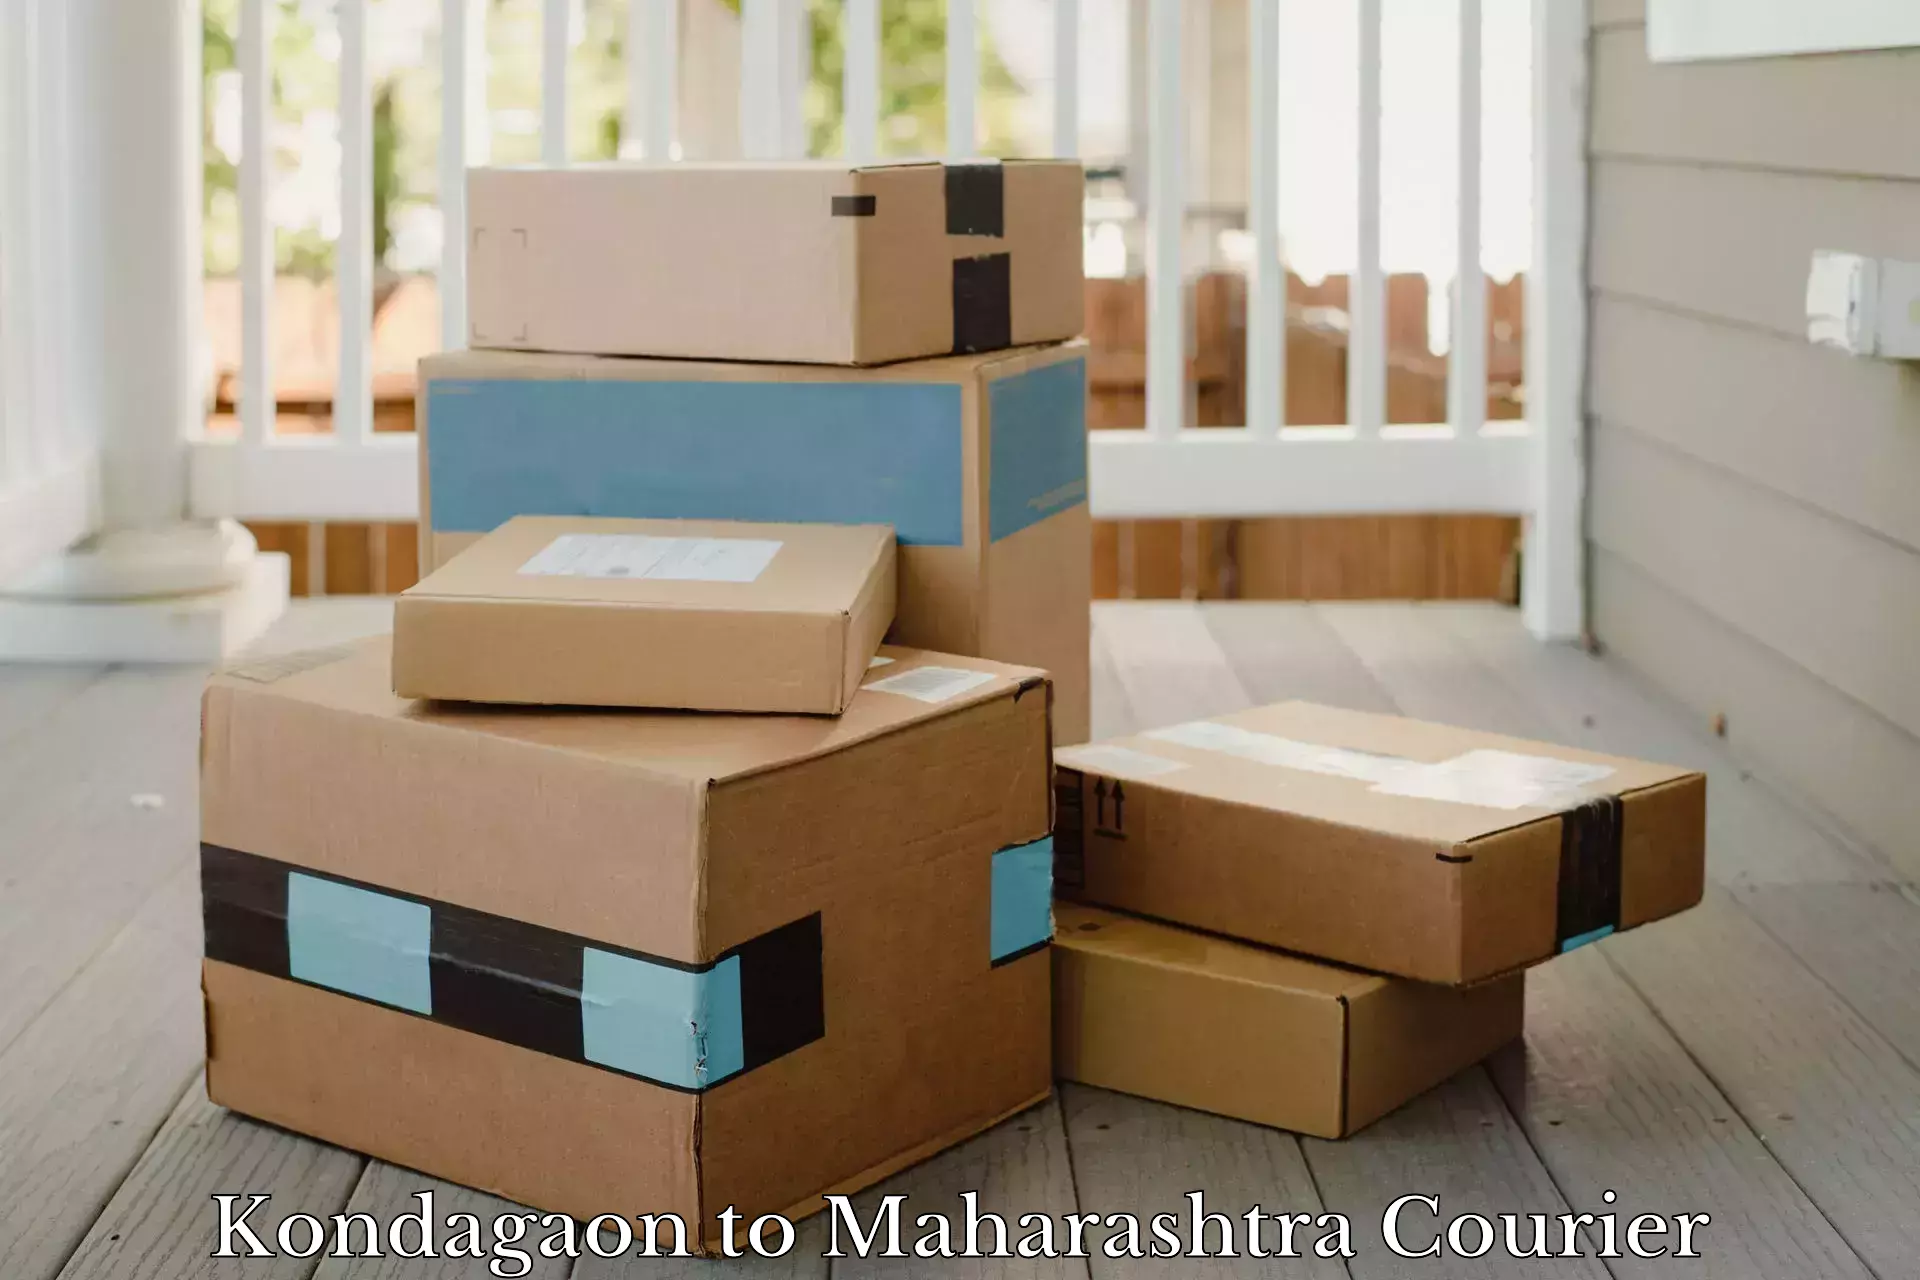 Reliable parcel services Kondagaon to Maharashtra